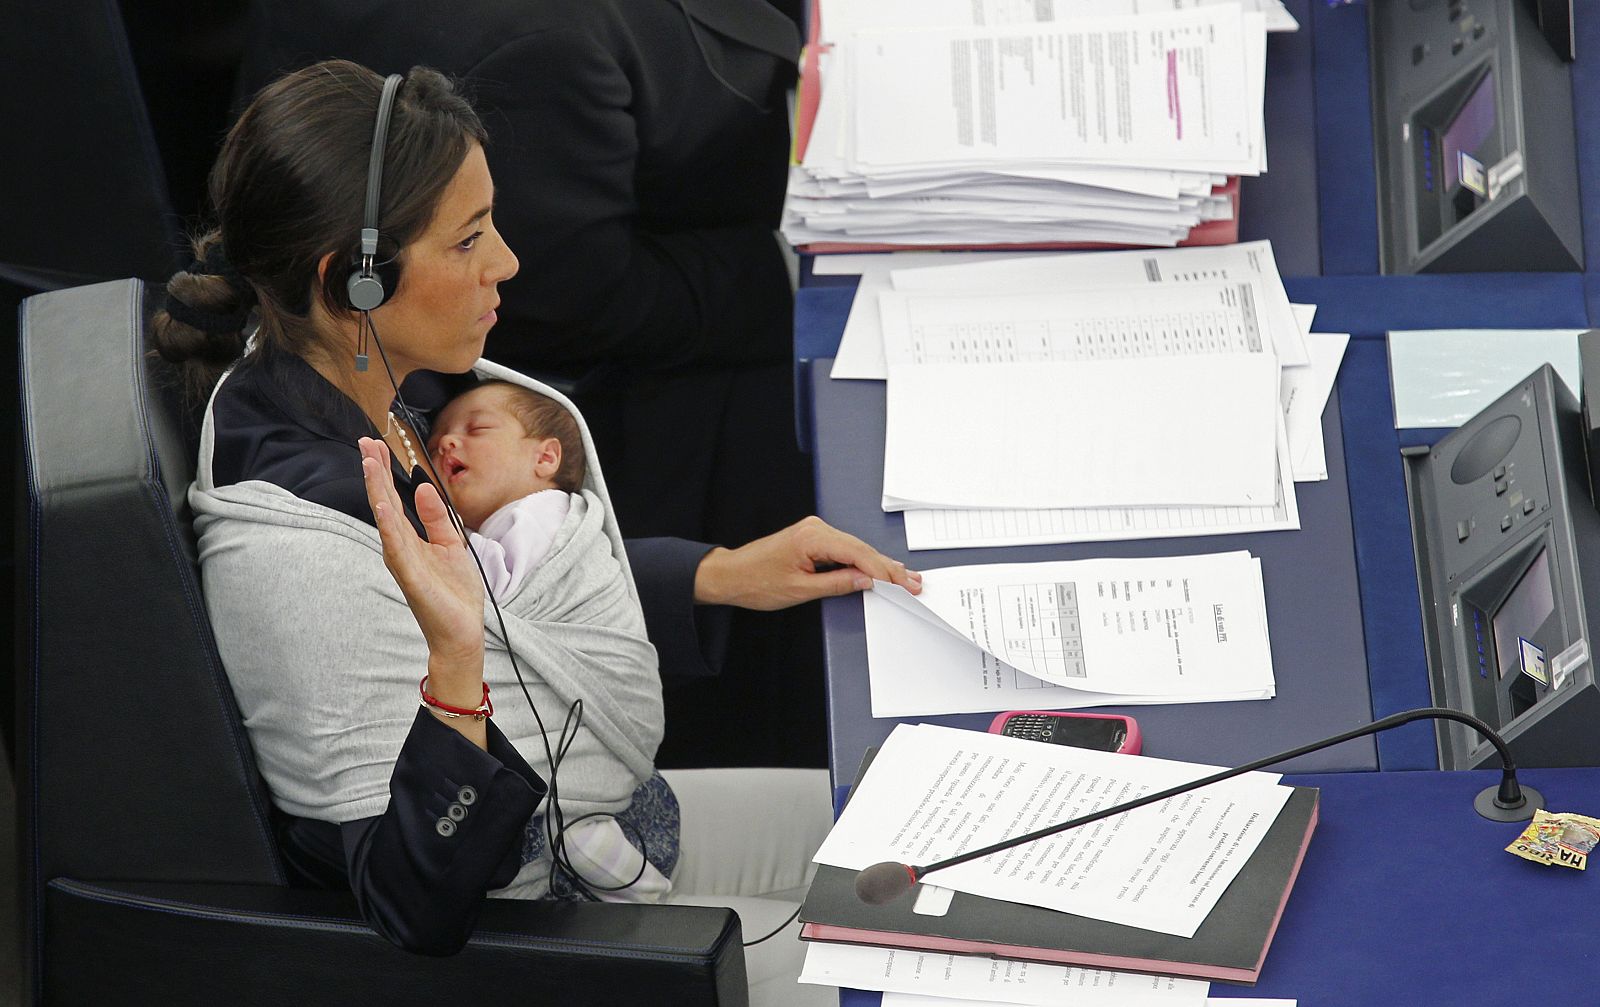 La diputada Ronzulli, junto a su bebé en la sesión del Europarlamento en Estrasburgo.